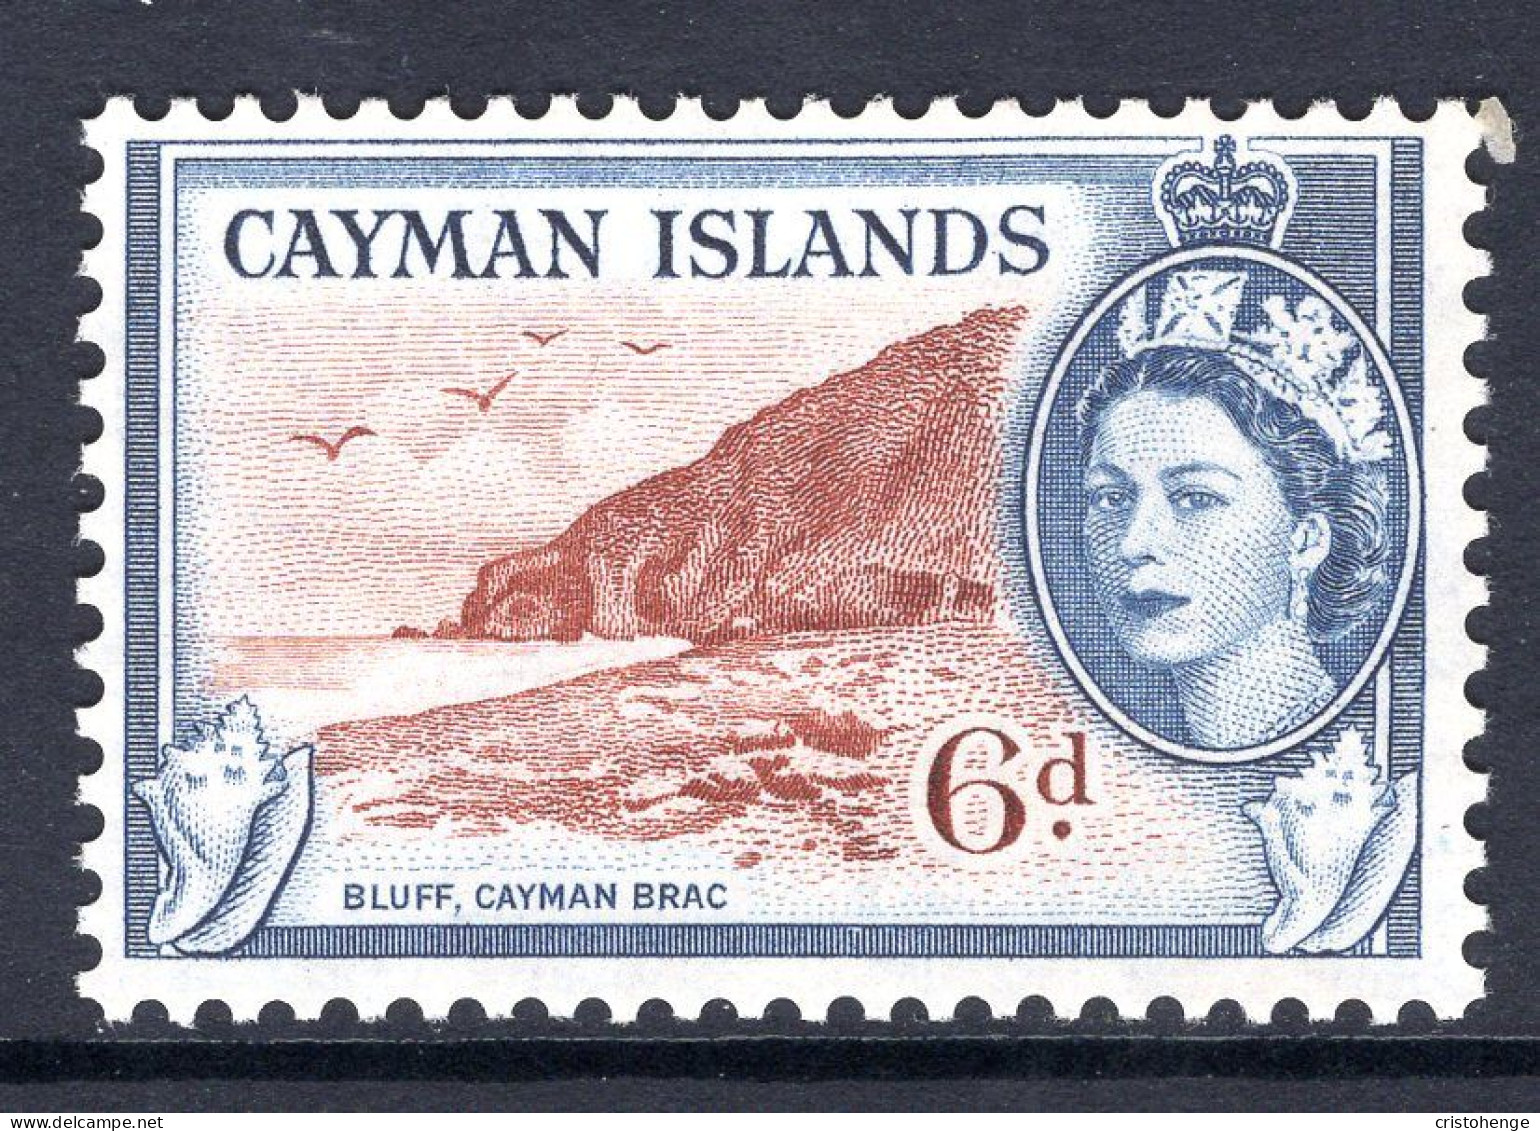 Cayman Islands 1953-62 QEII Pictorials - 6d Bluff, Cayman Brac MNH (SG 156) - Cayman Islands